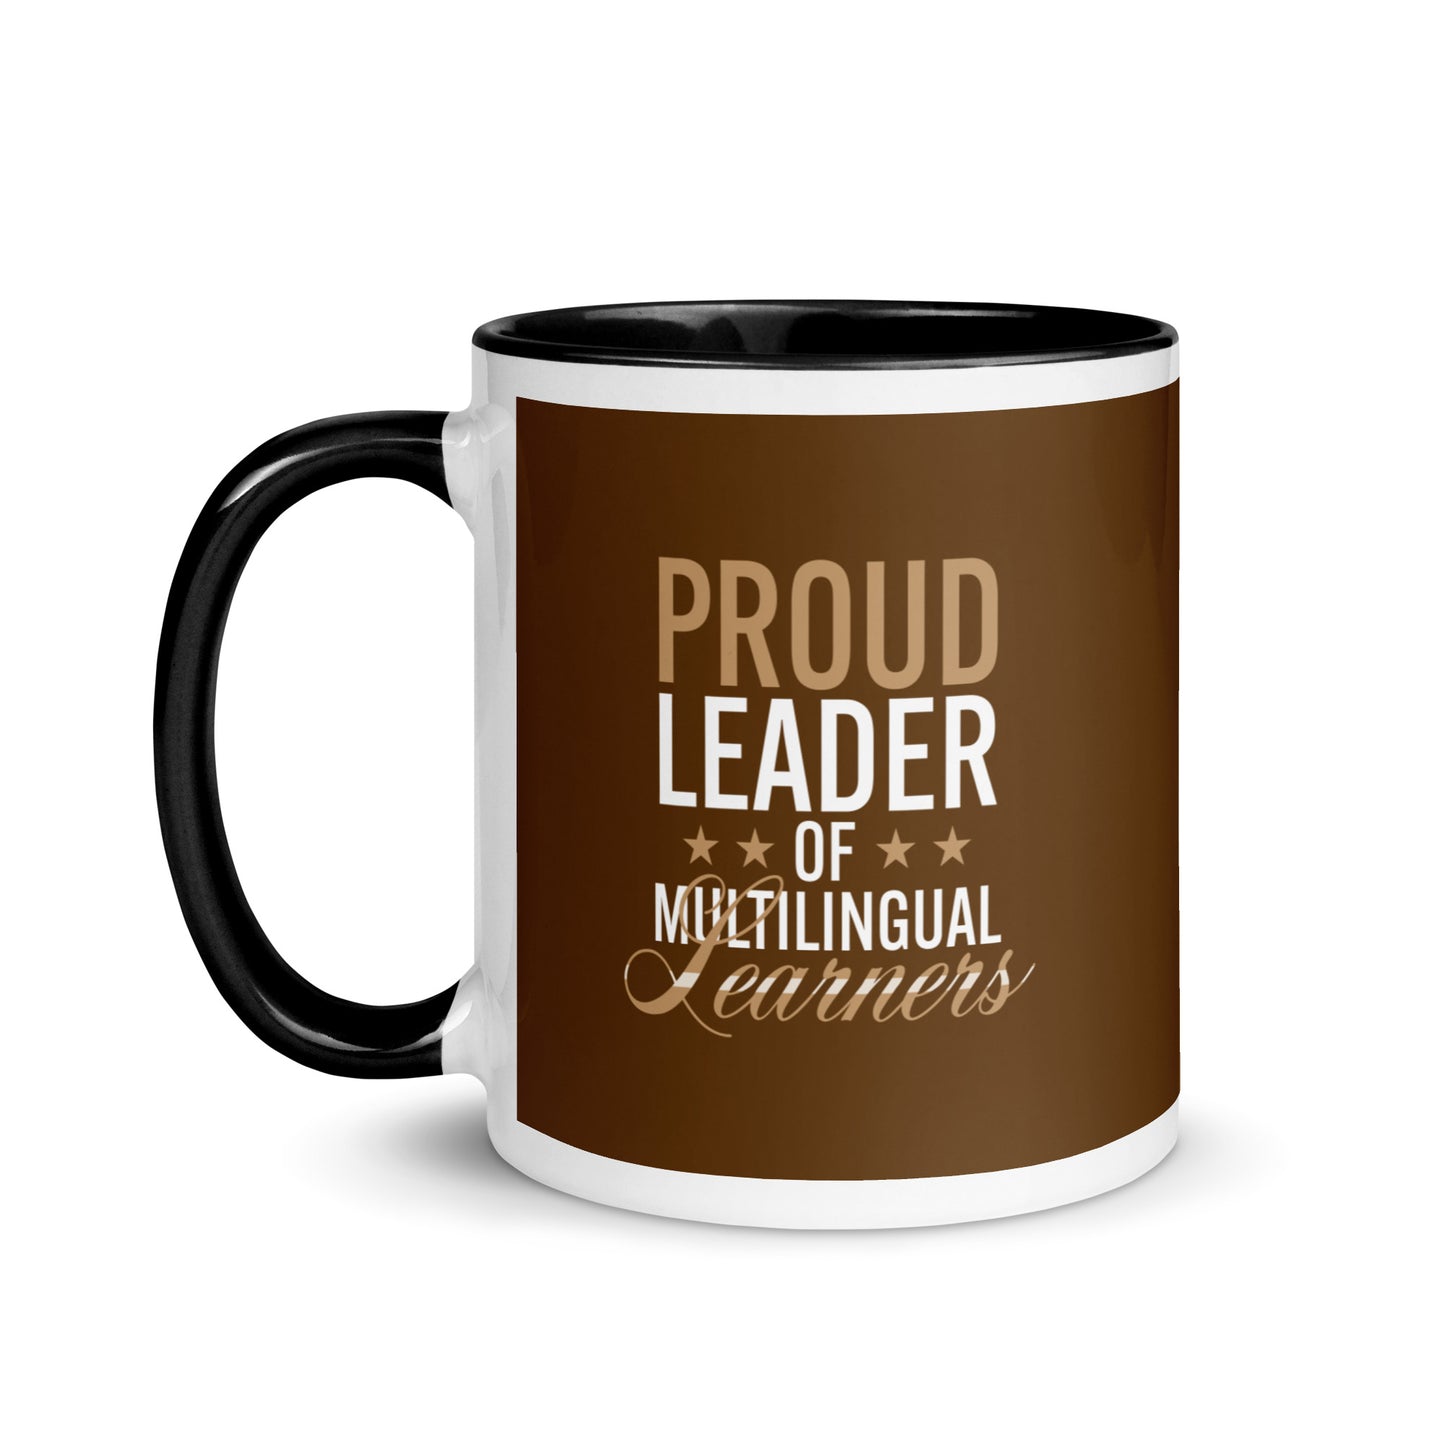 Multilingual Learner Mug with Color Inside